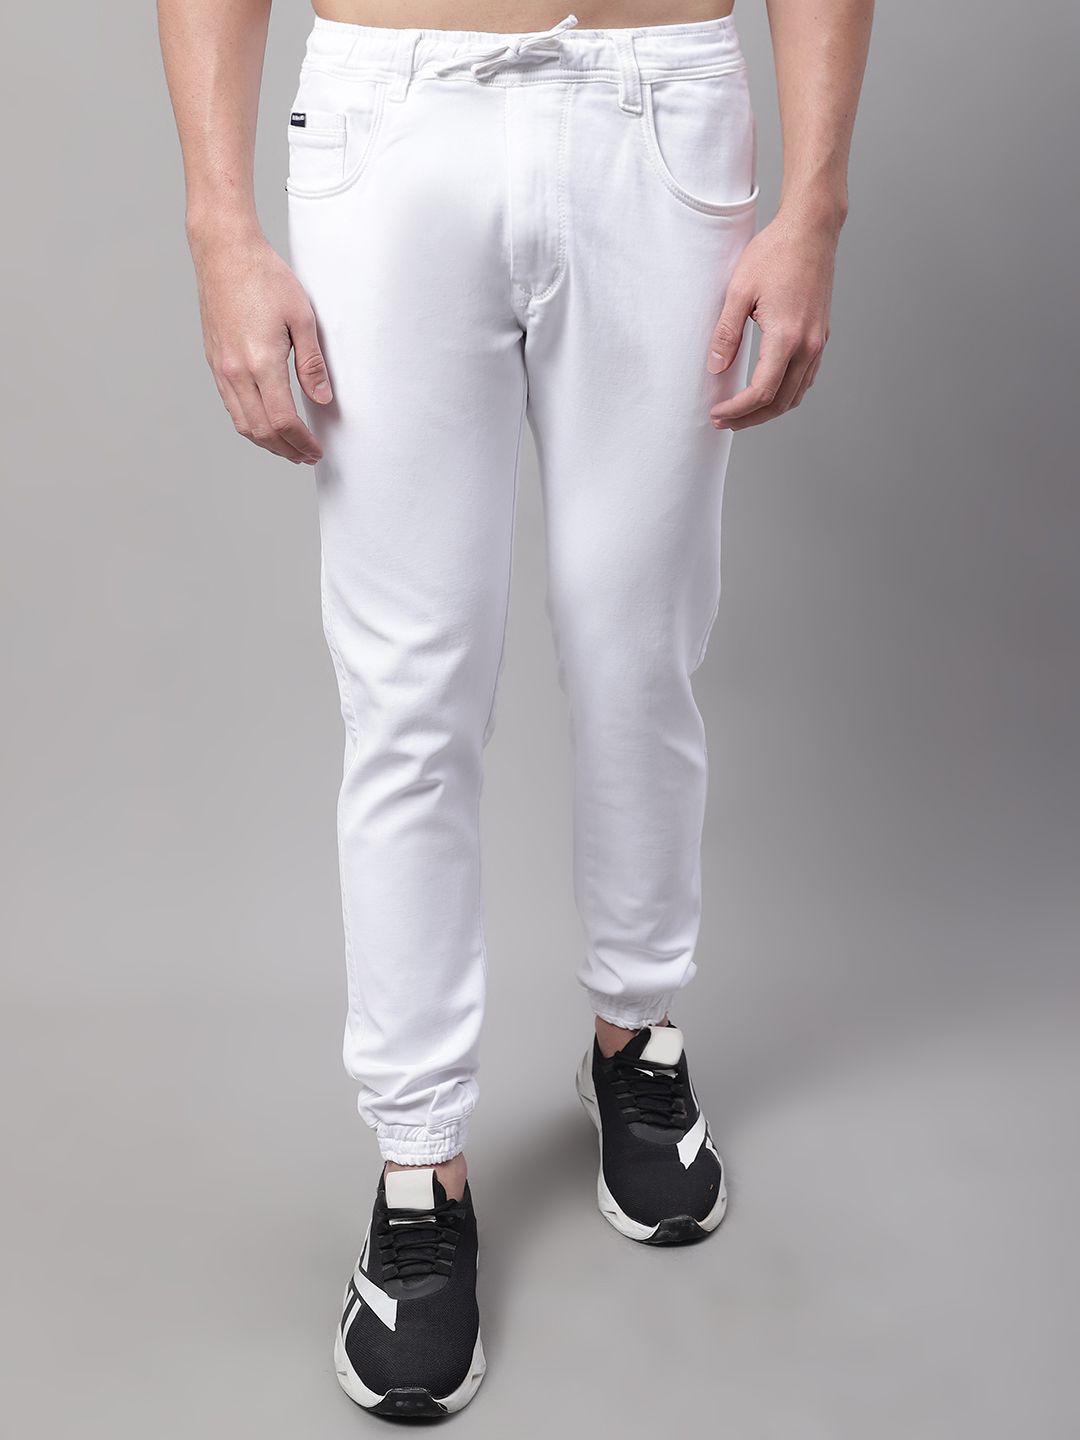     			Rodamo Slim Fit Basic Men's Jeans - White ( Pack of 1 )